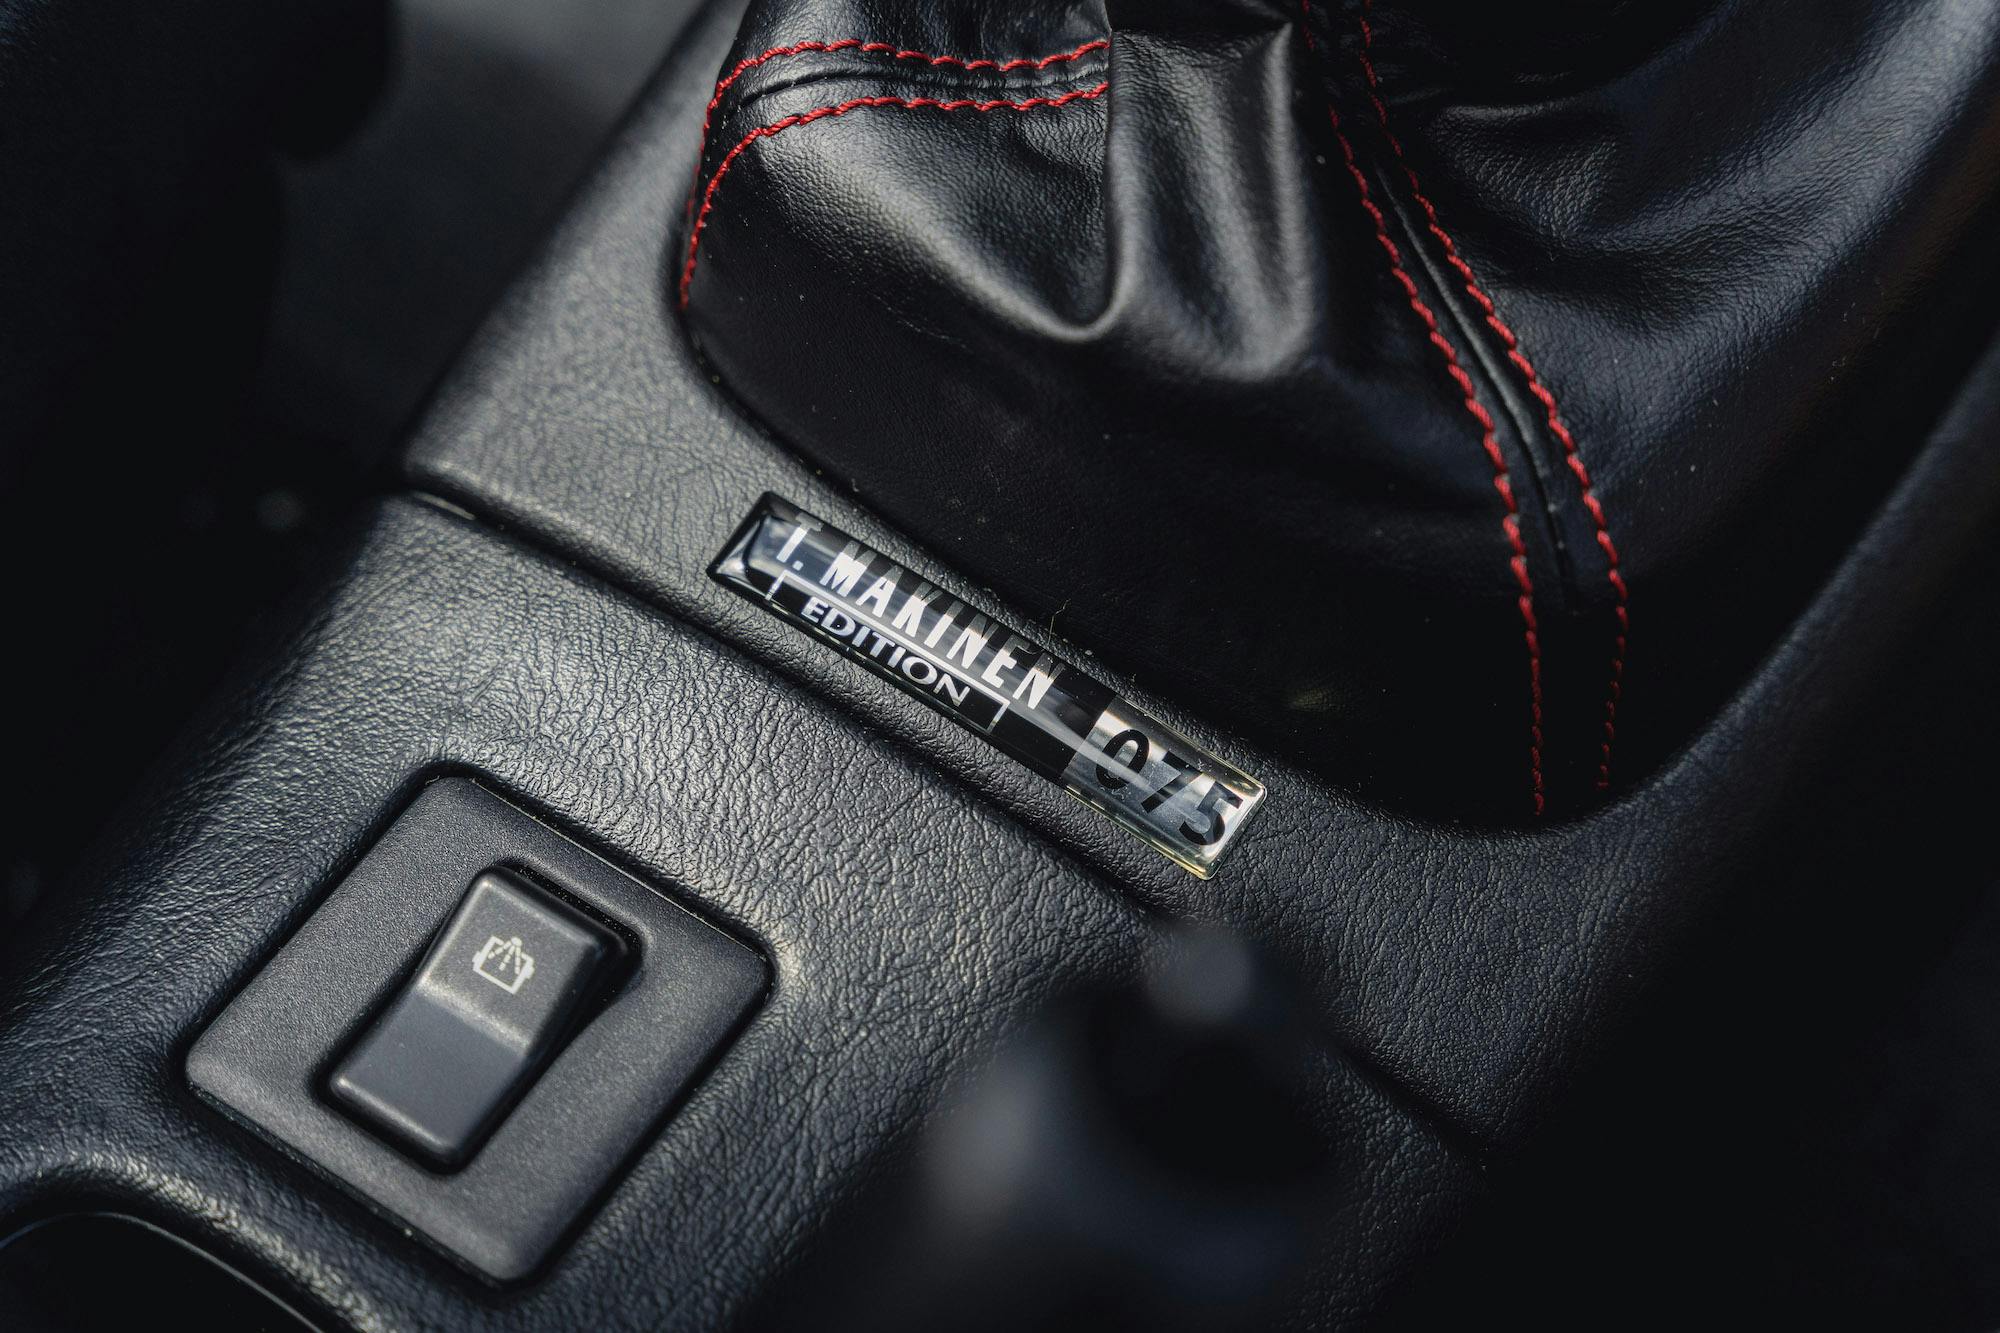 2001 Mitsubishi EVO VI Tommi Makinen interior console badge number 075